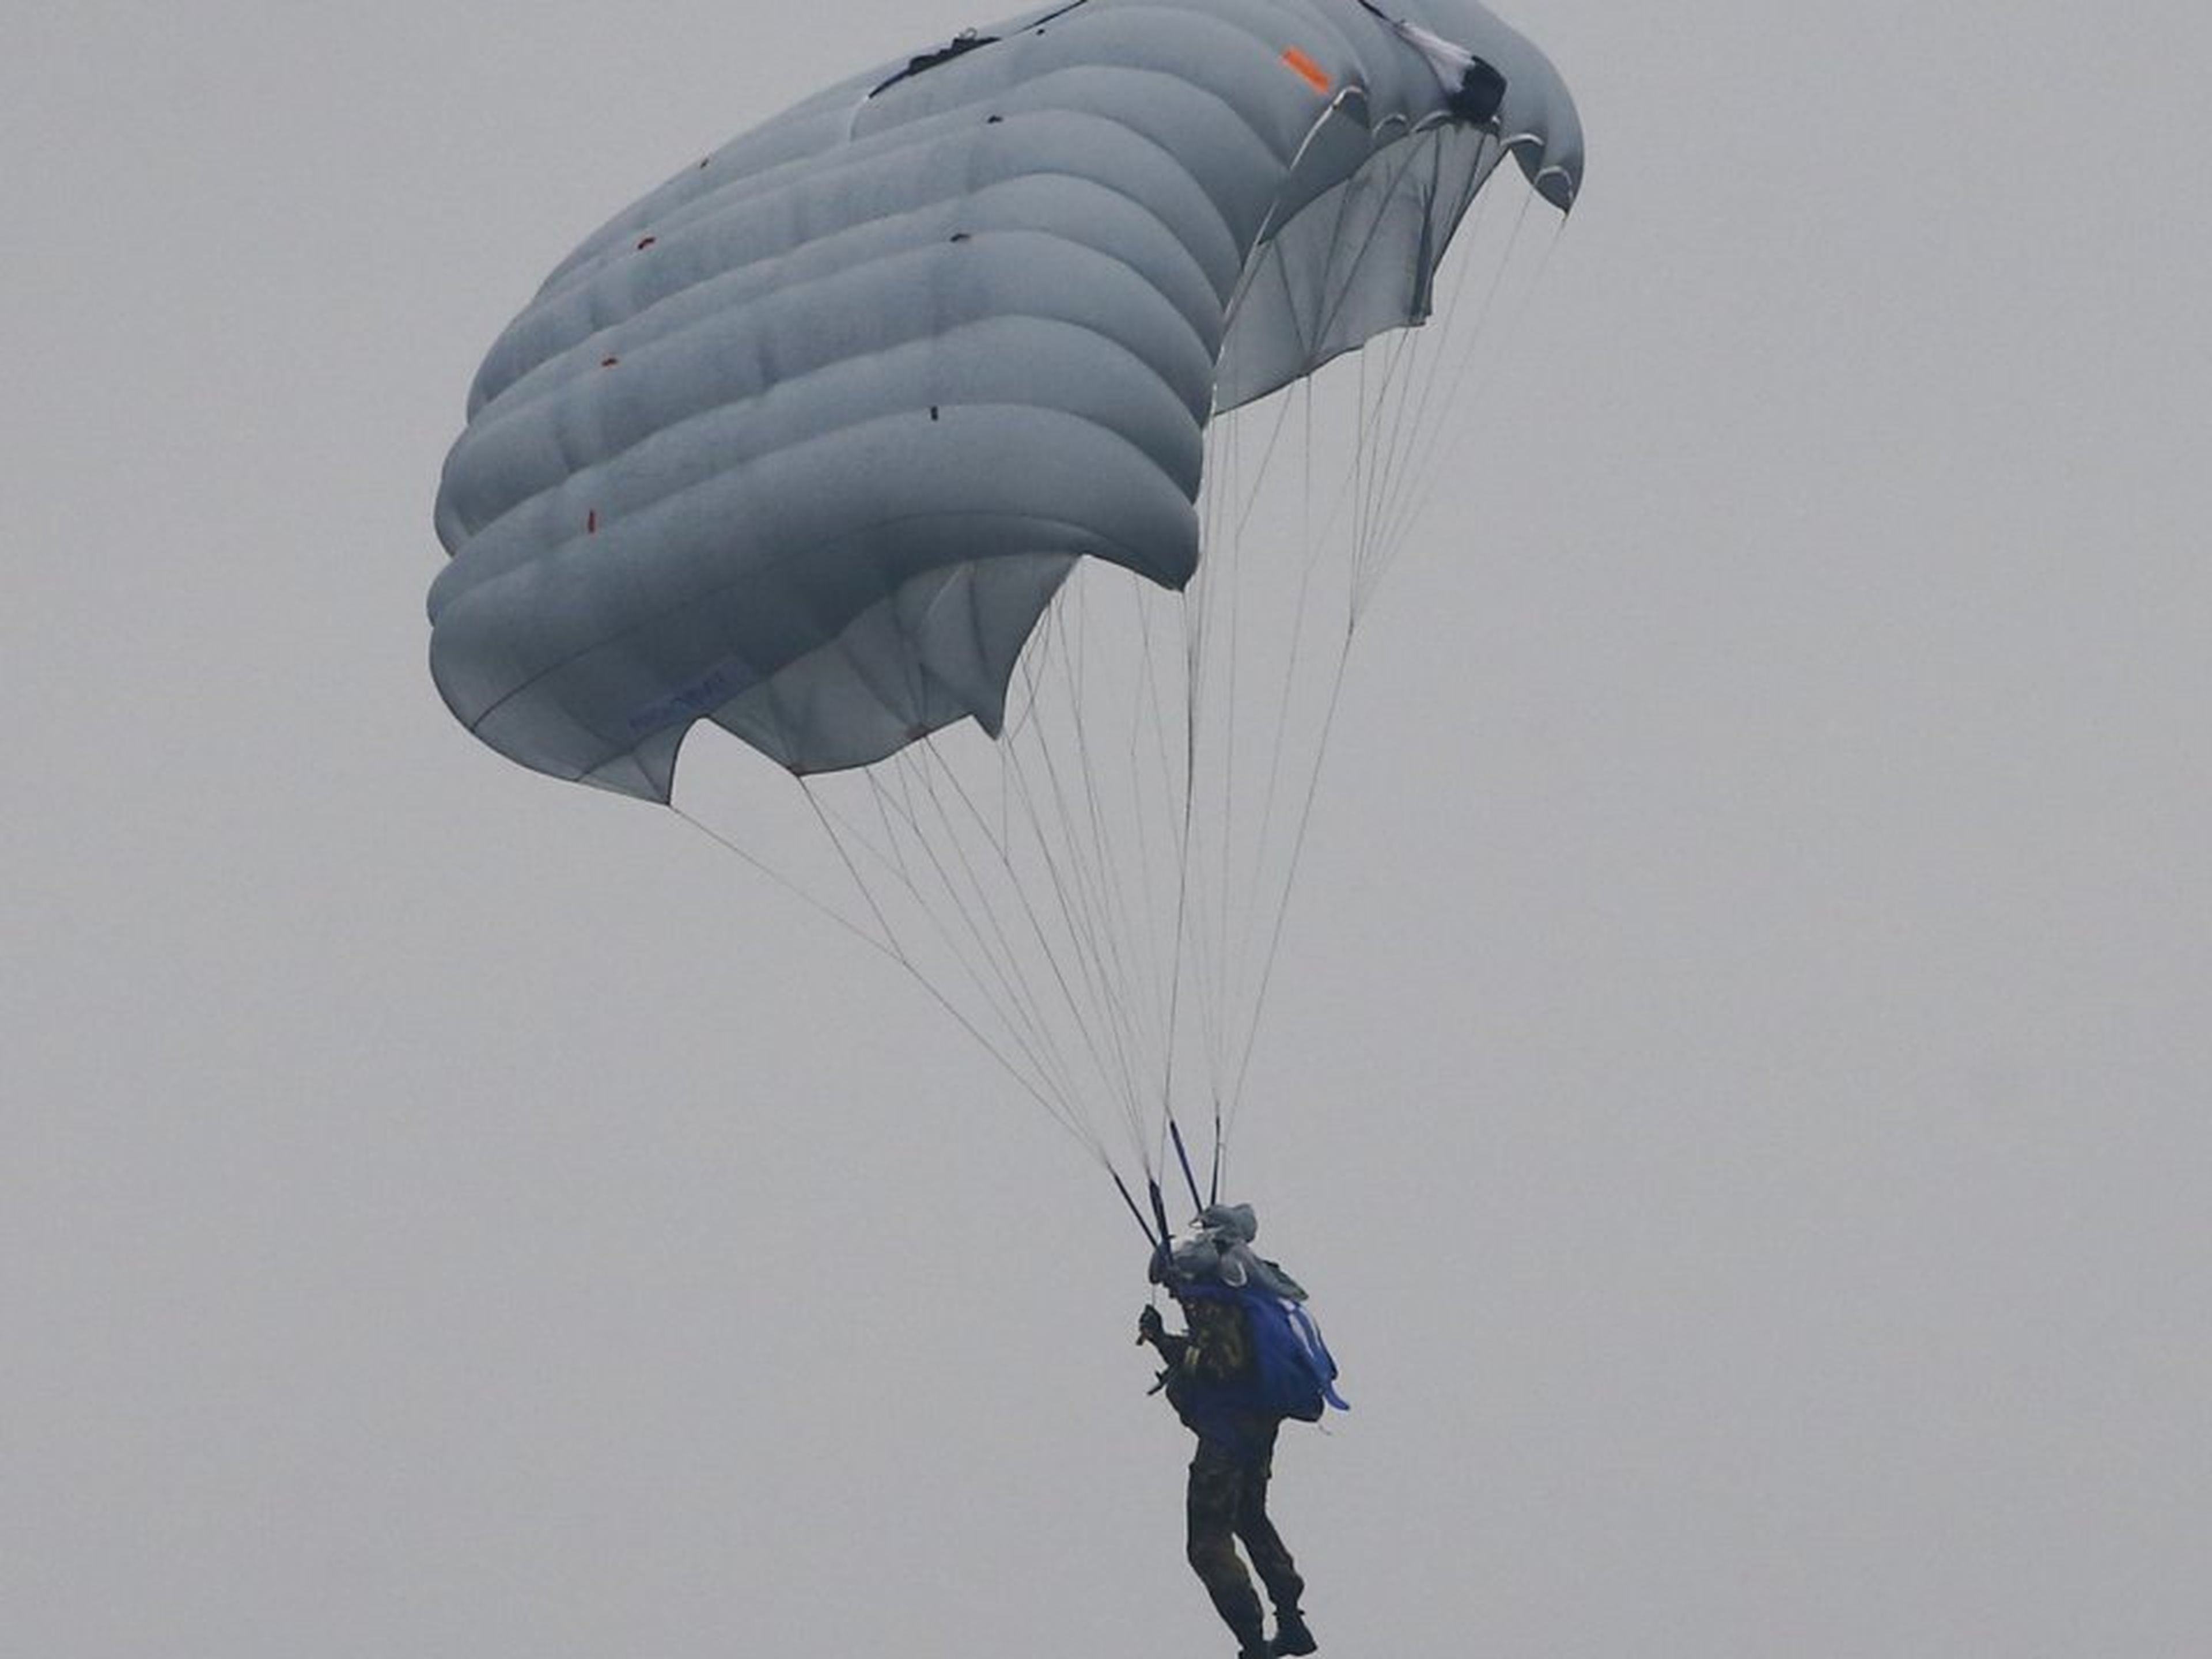 Según los medios de comunicación estatales rusos, el ejército ruso está desarrollando el sistema de paracaídas D-14 Shelest.